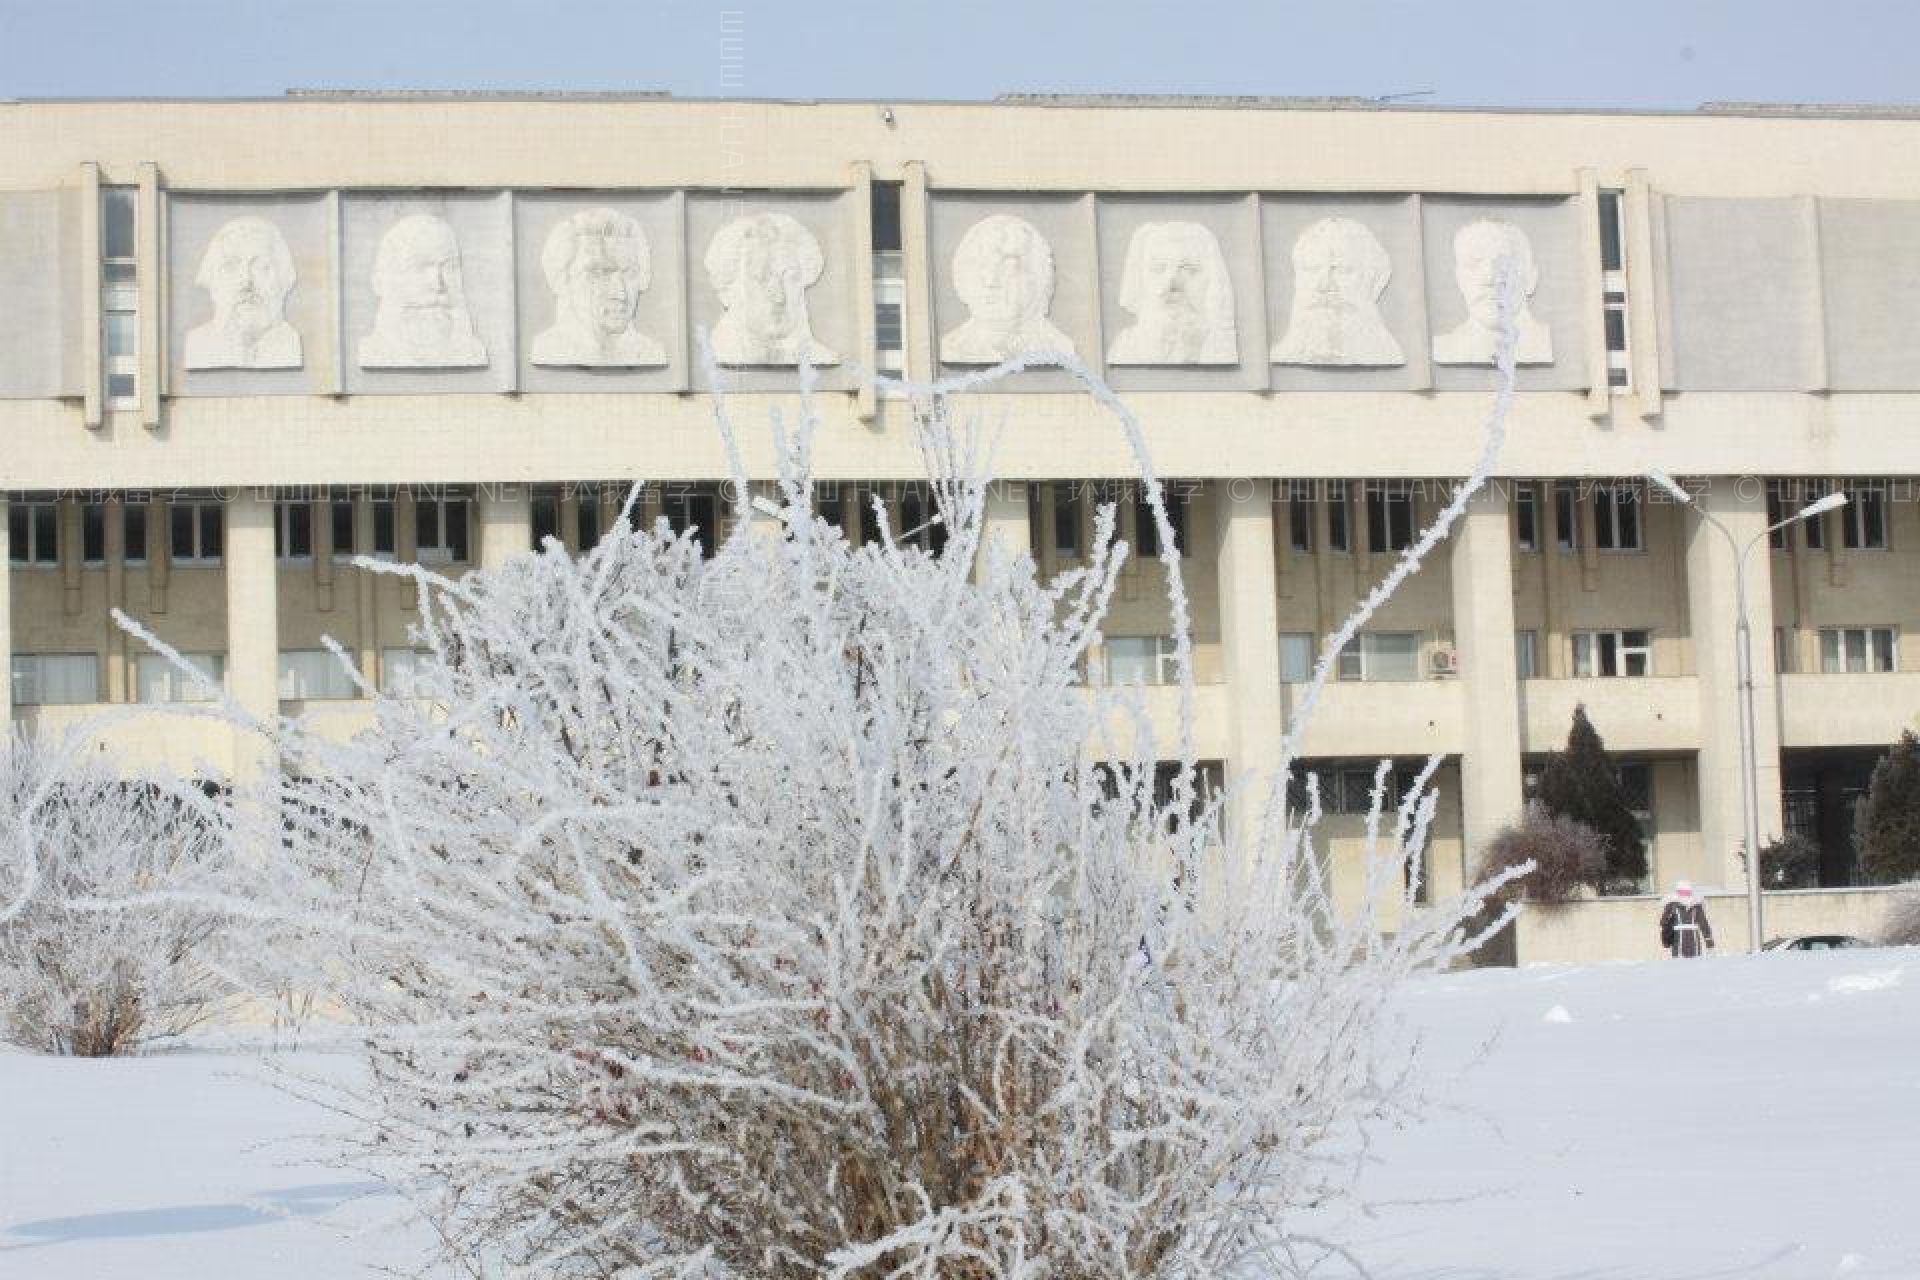 伏尔加格勒国立大学